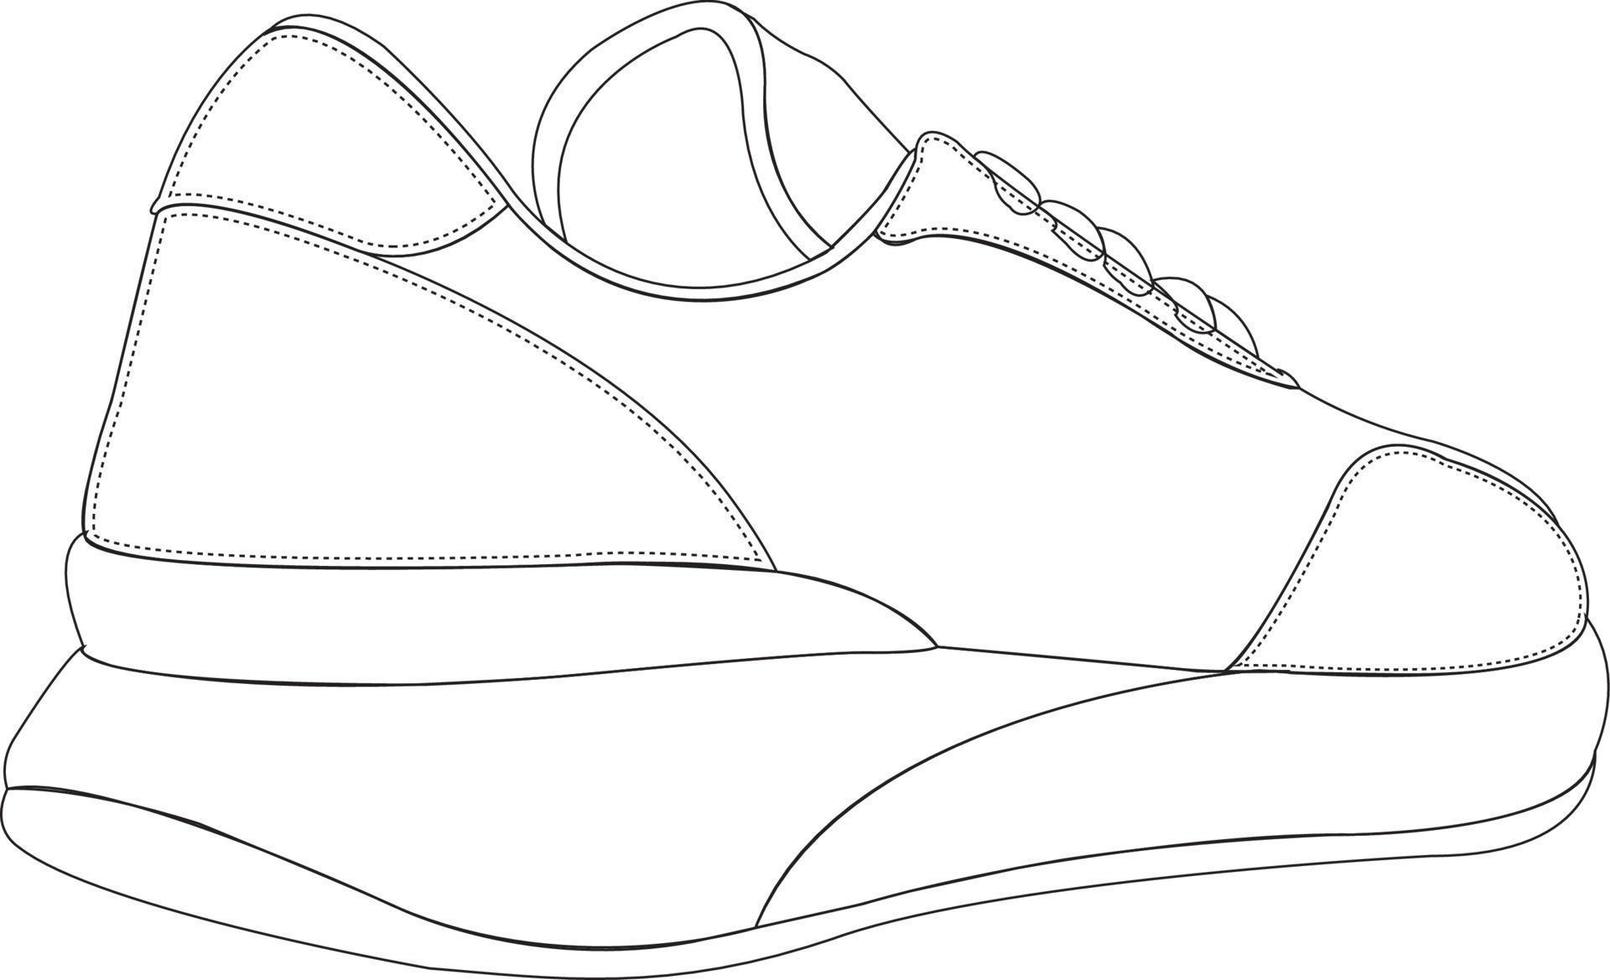 Sneaker shoes. Shoes line art design vector